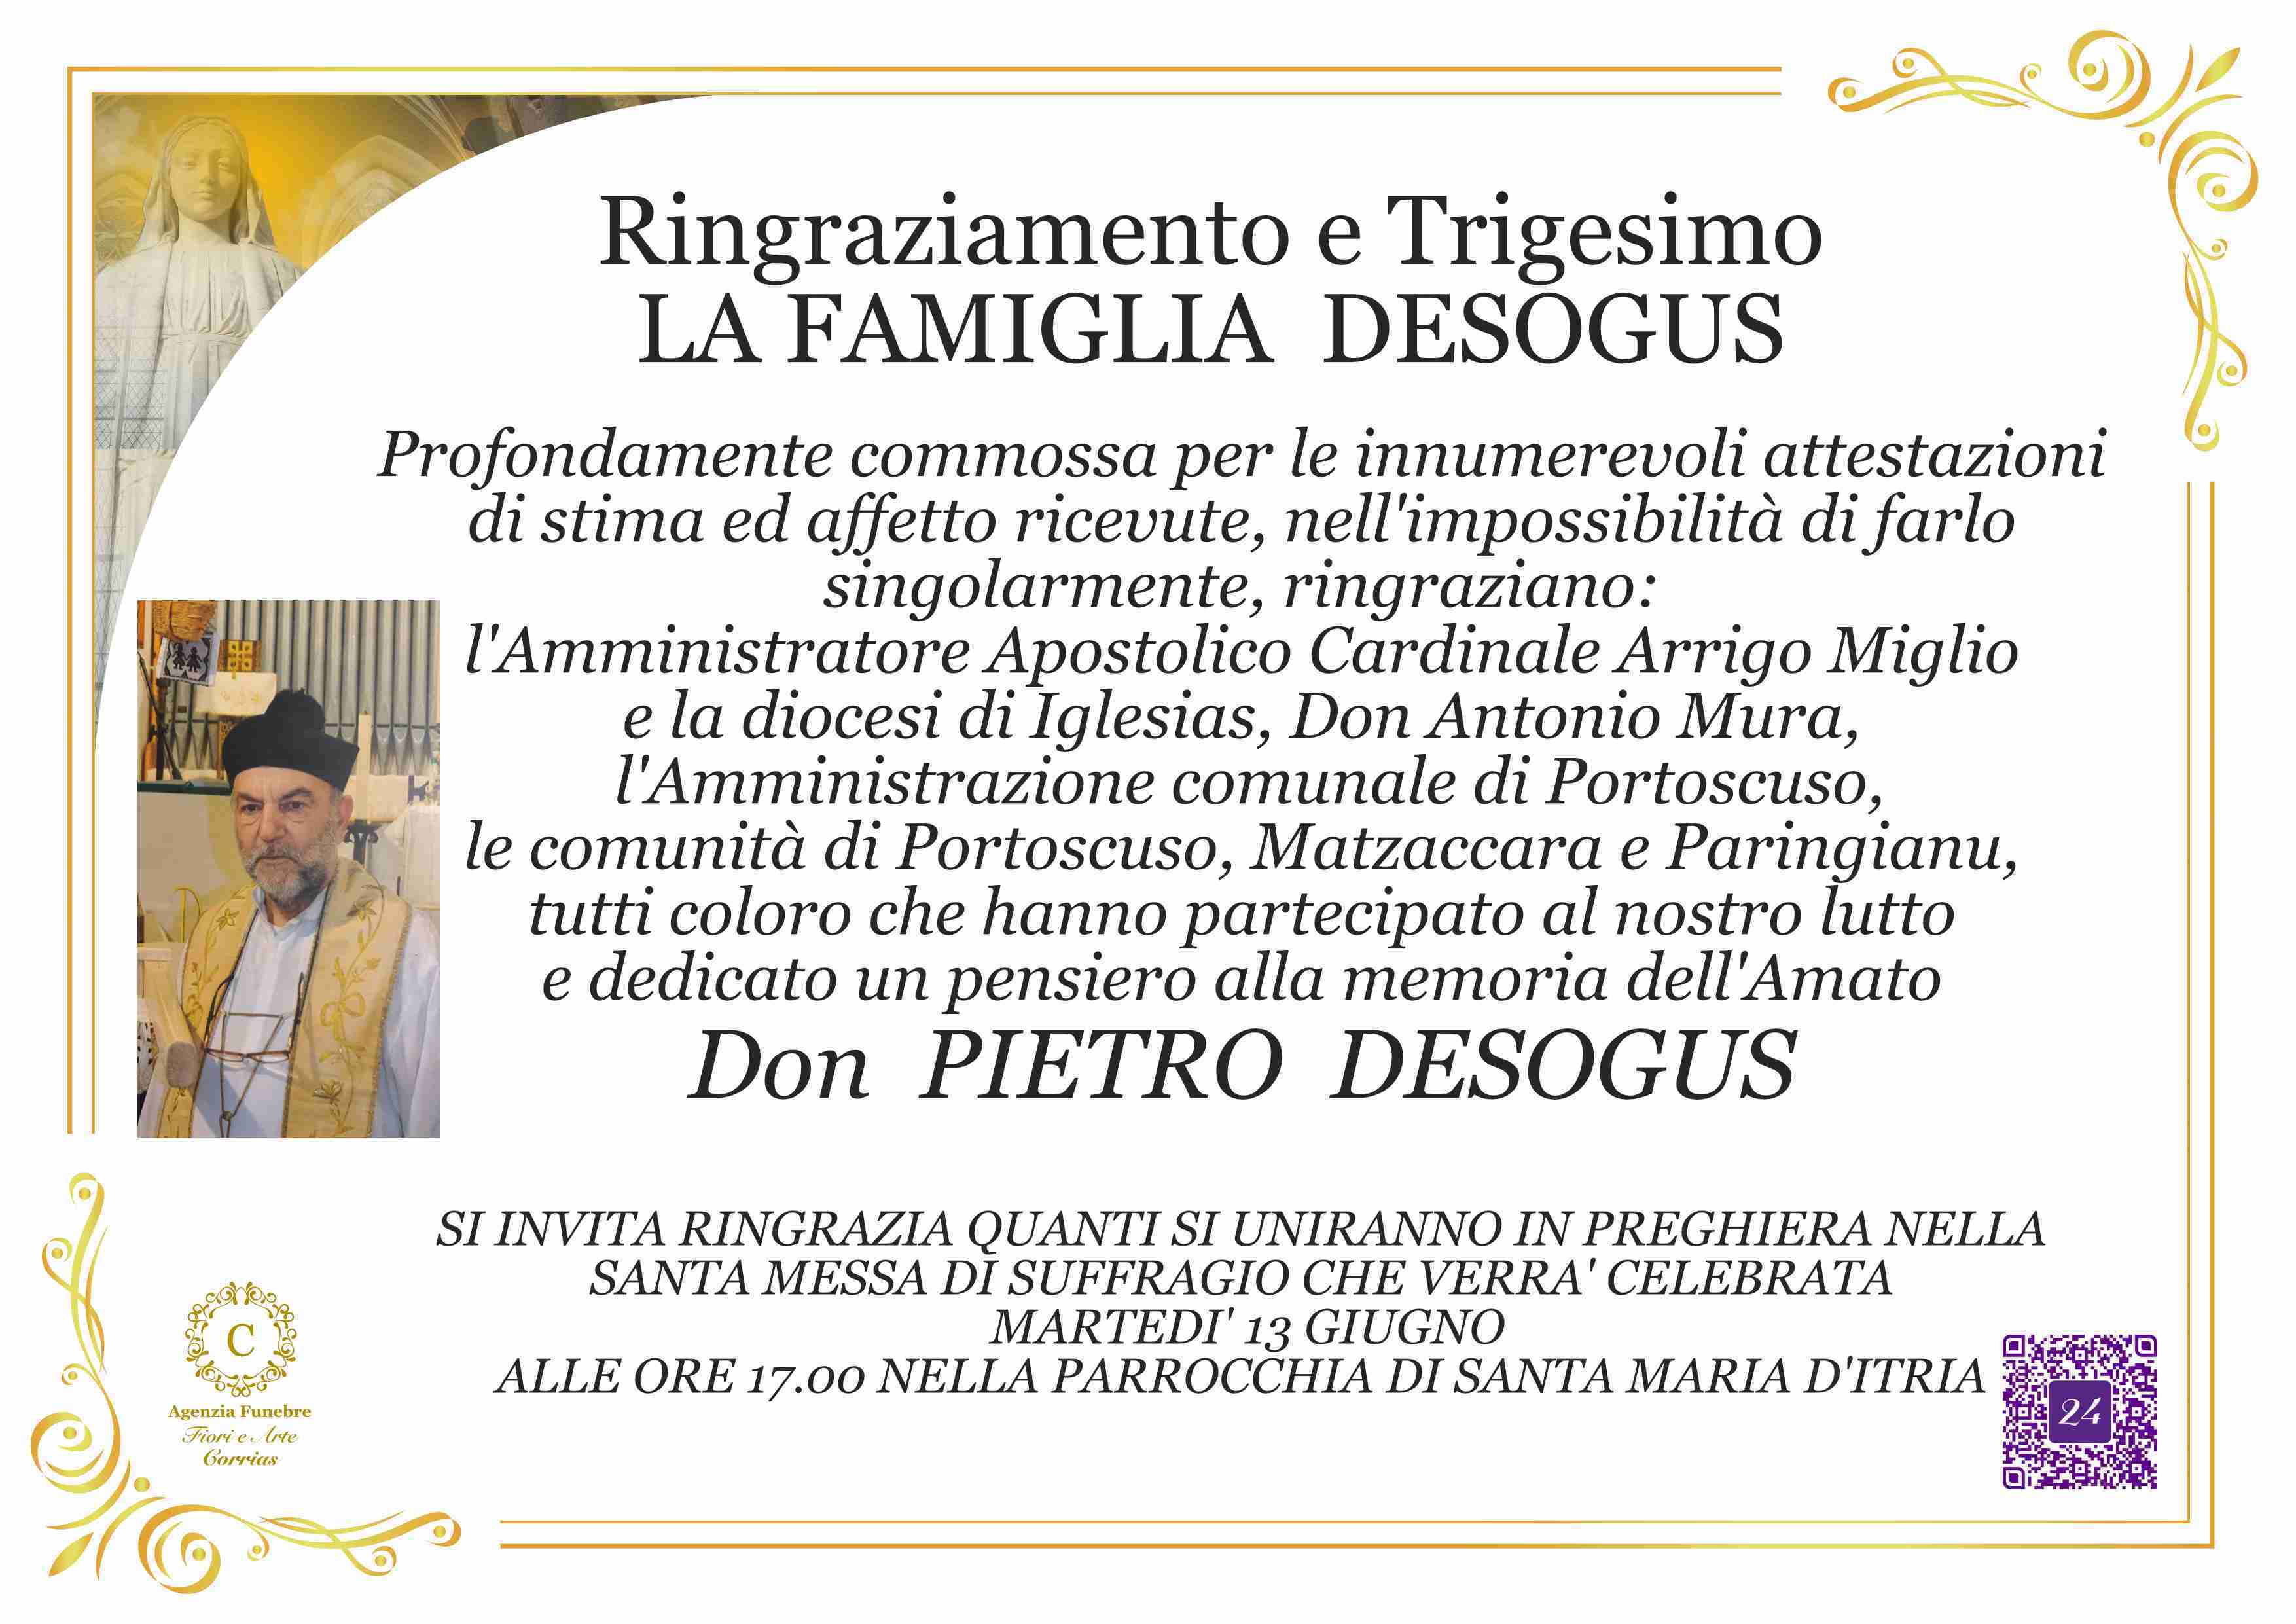 Pietro Desogus